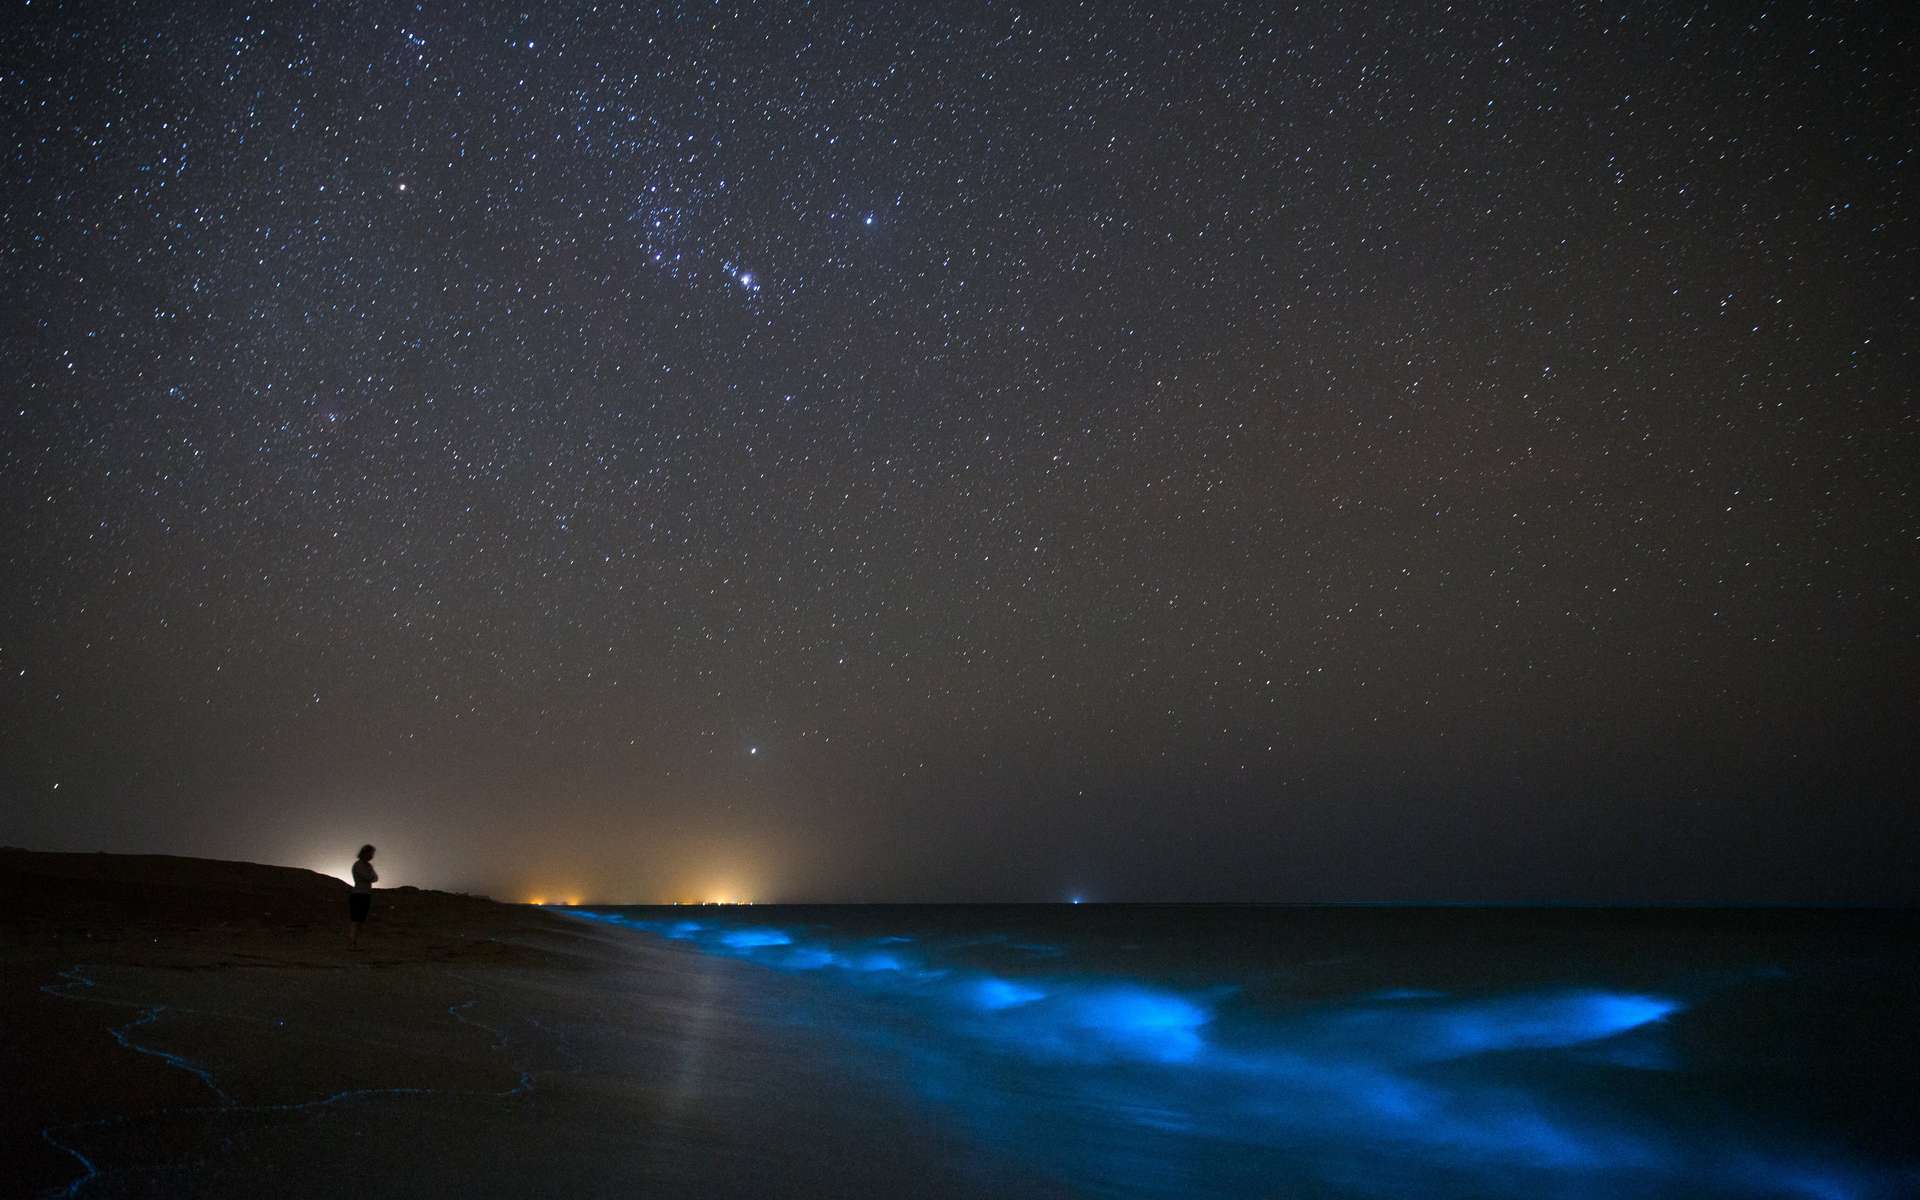 La bioluminescence dans les océans est souvent due aux phytoplanctons, comme ici sur une plage en Iran. © sghiaseddin, Adobe Stock